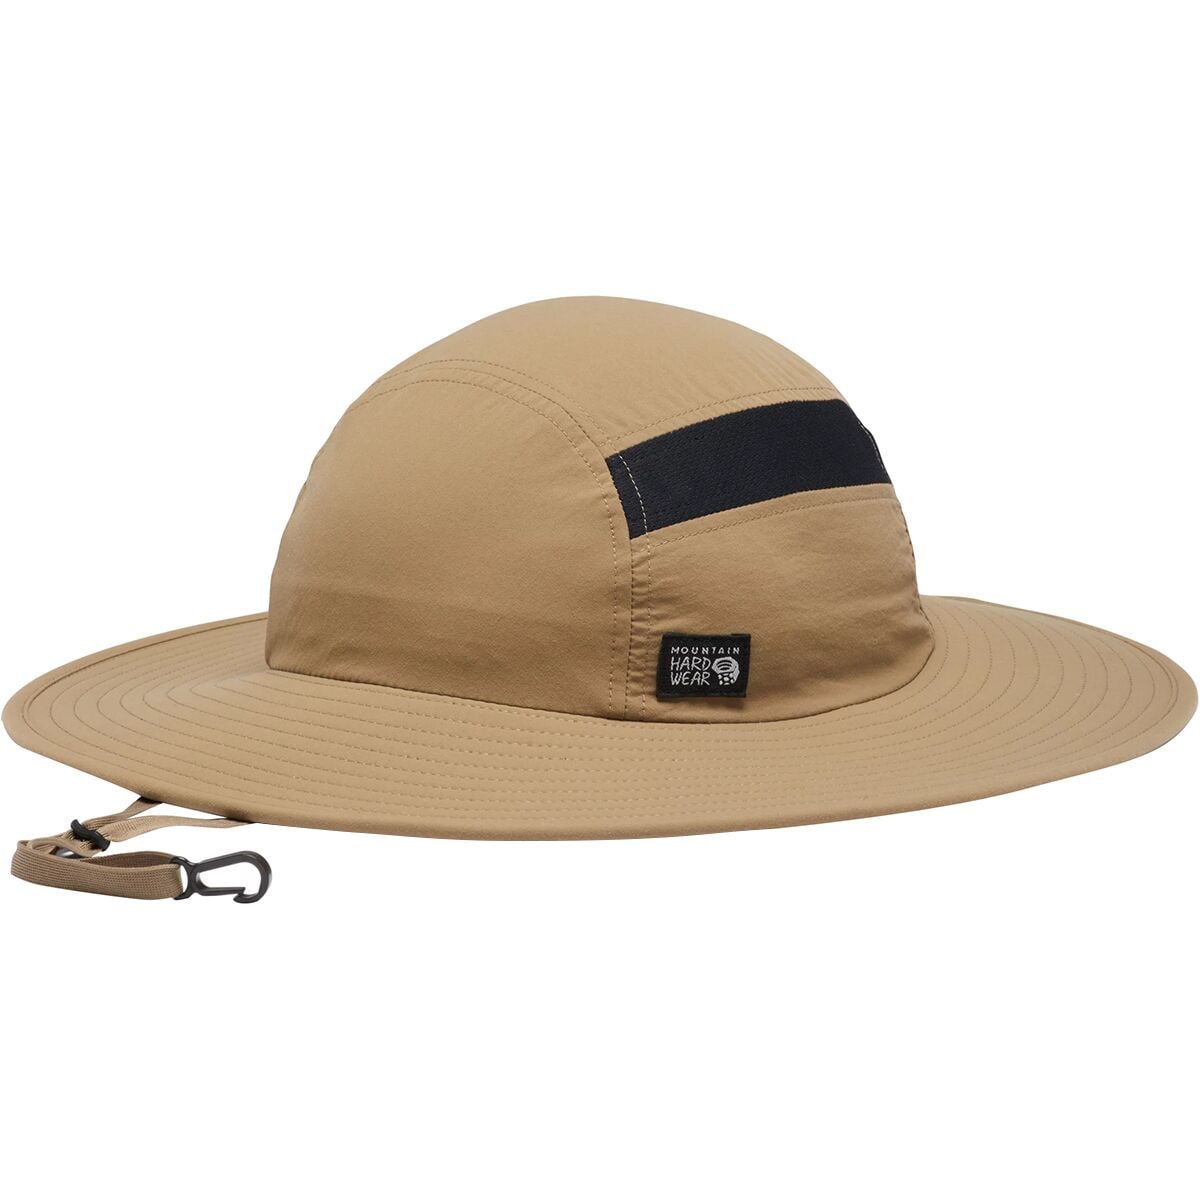 Mountain Hardwear Stryder Sun Hat